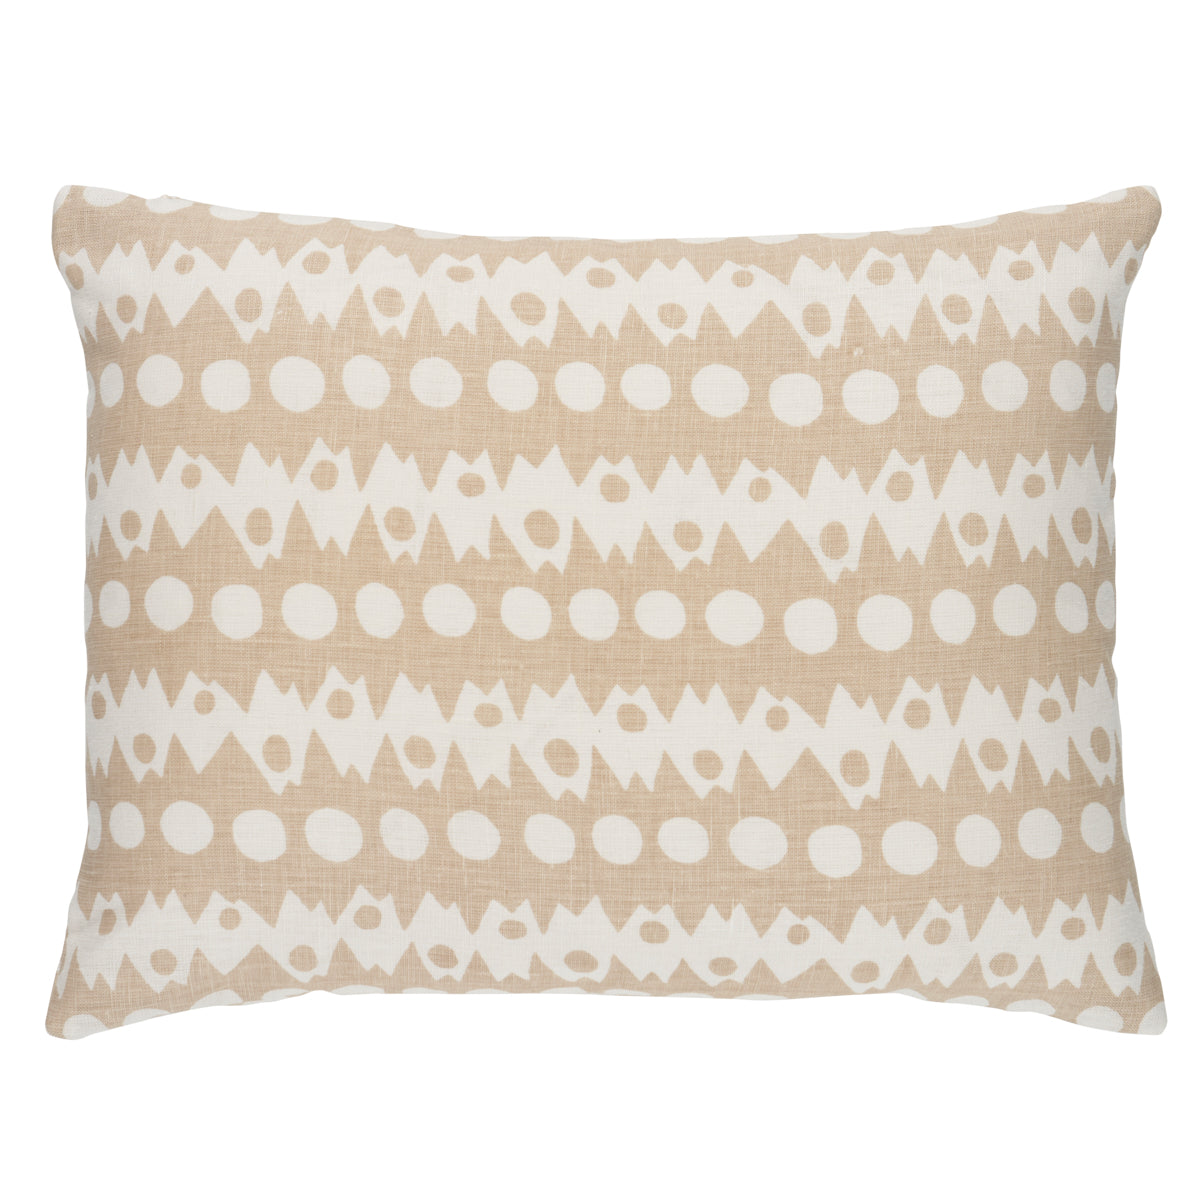 Purchase So18155212 | Trickledown Pillow, Natural - Schumacher Pillows